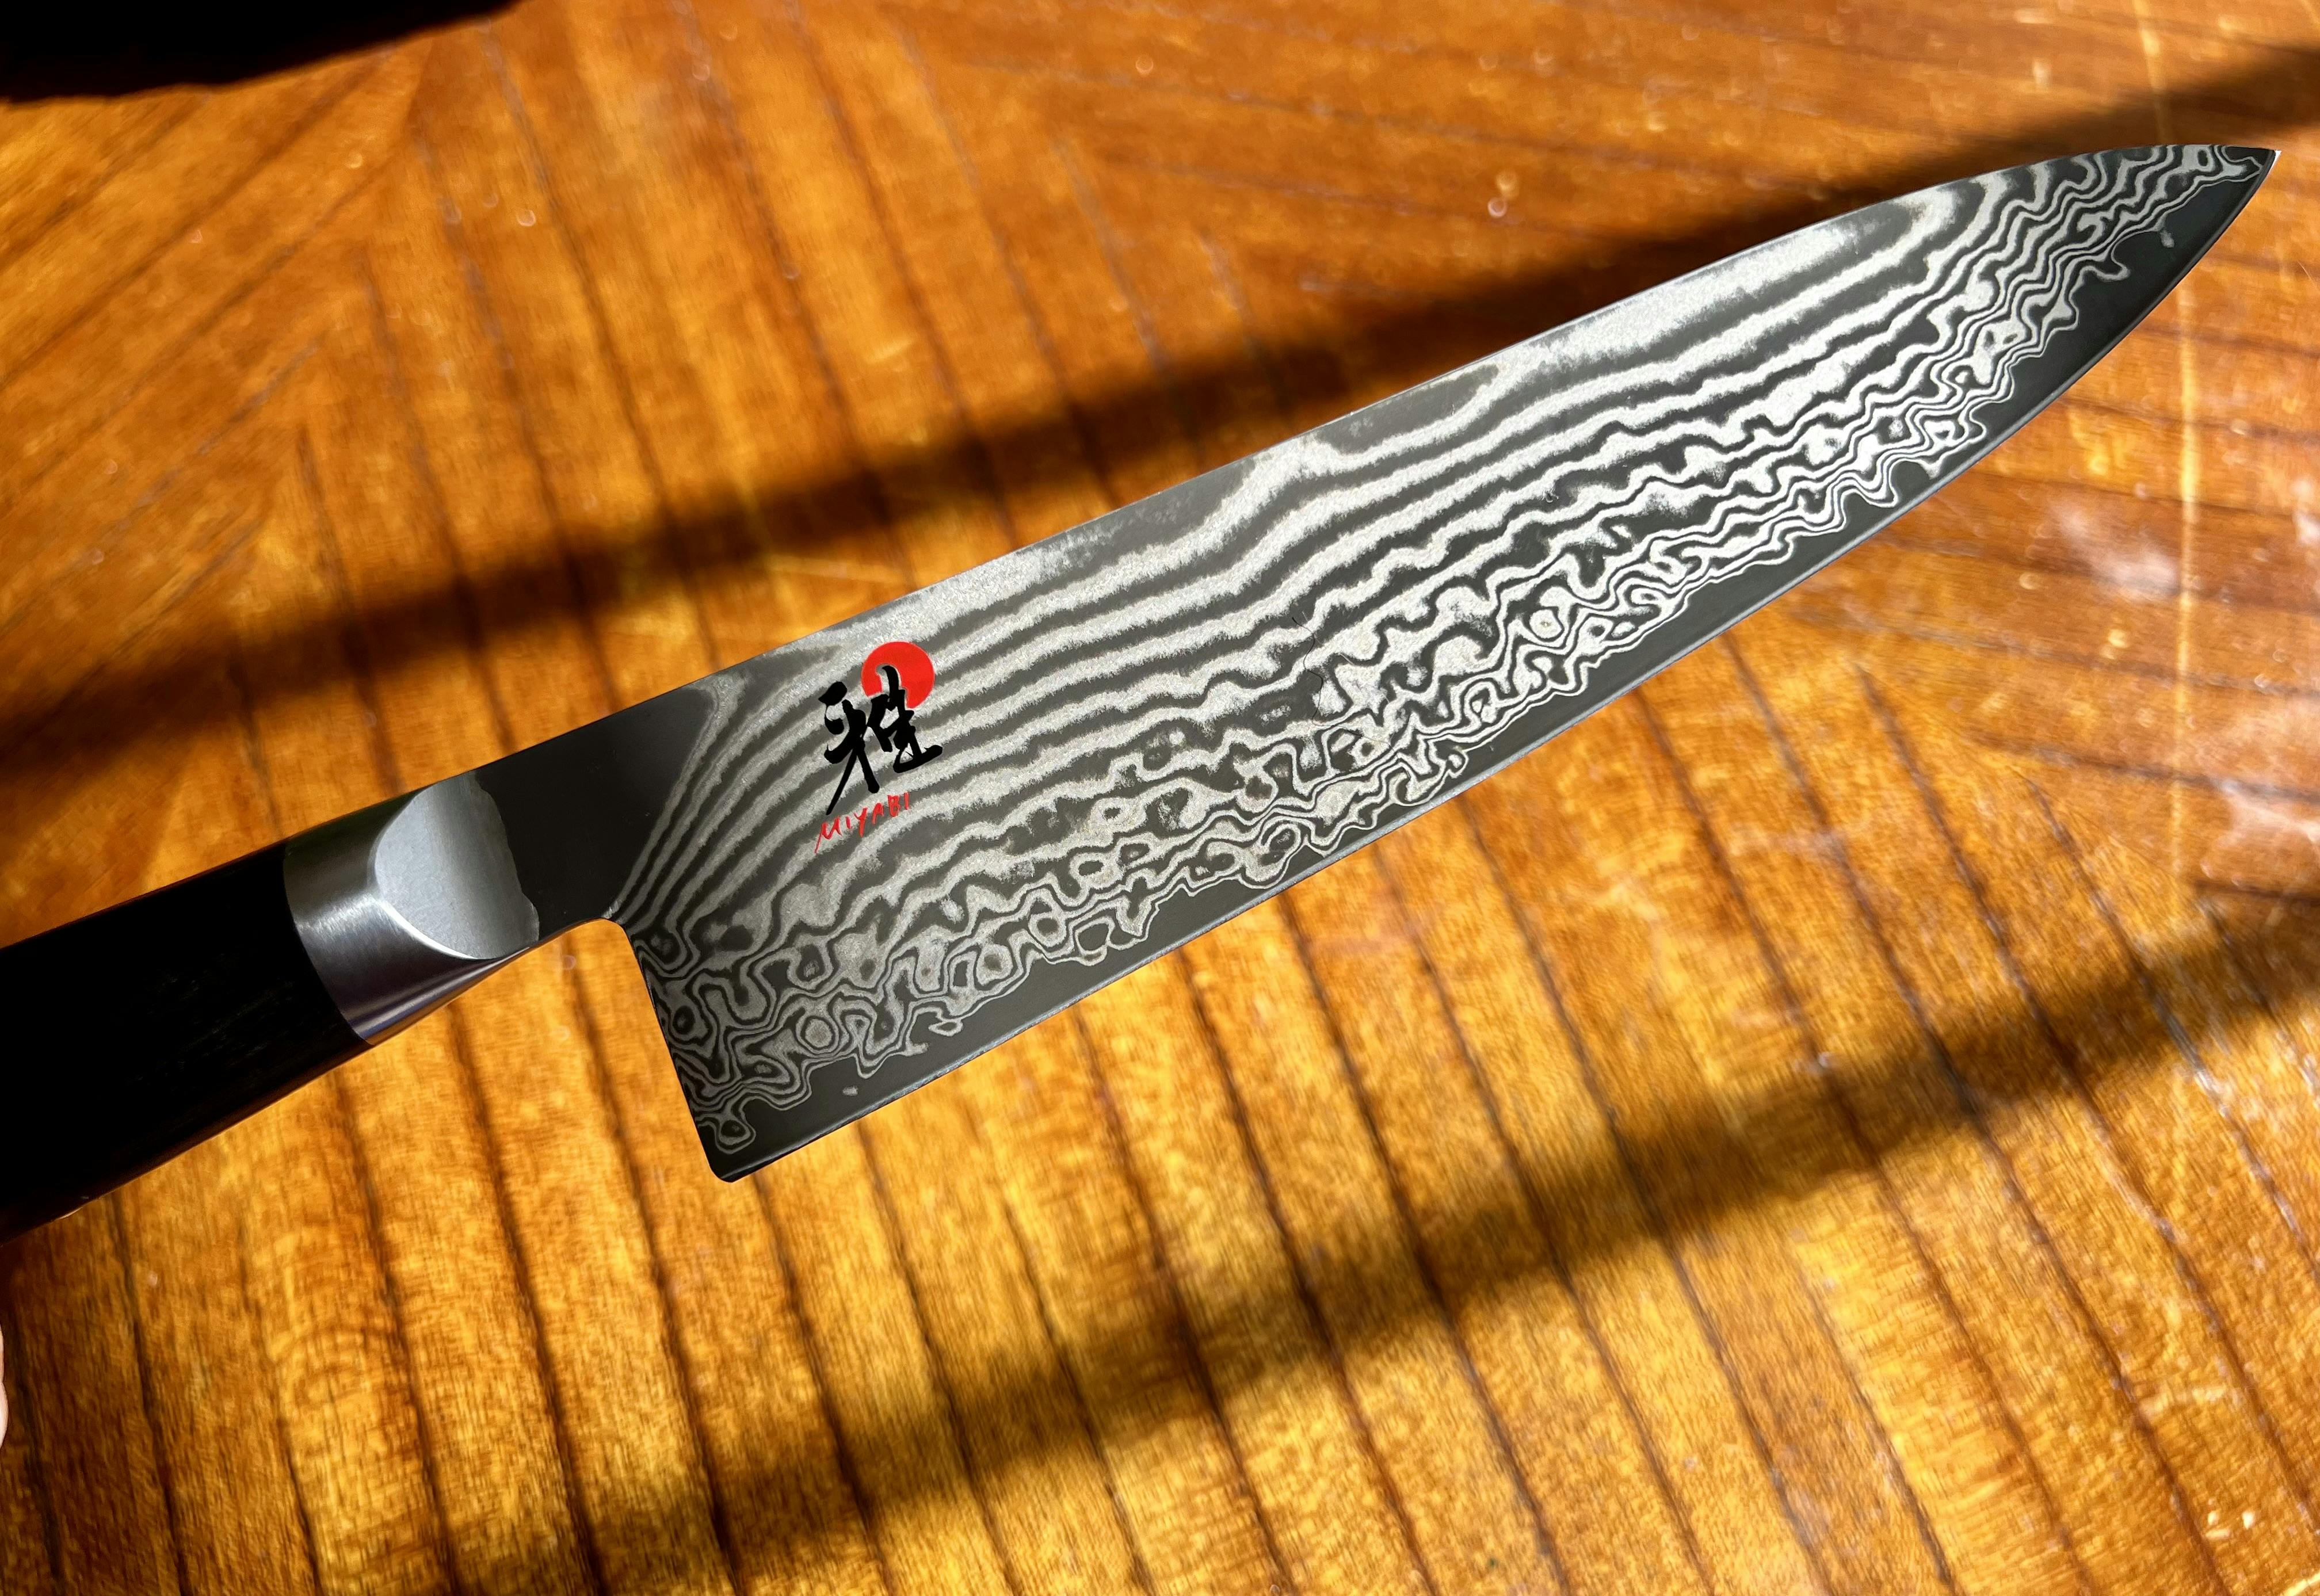 A close up of a Miyabi chef knife.